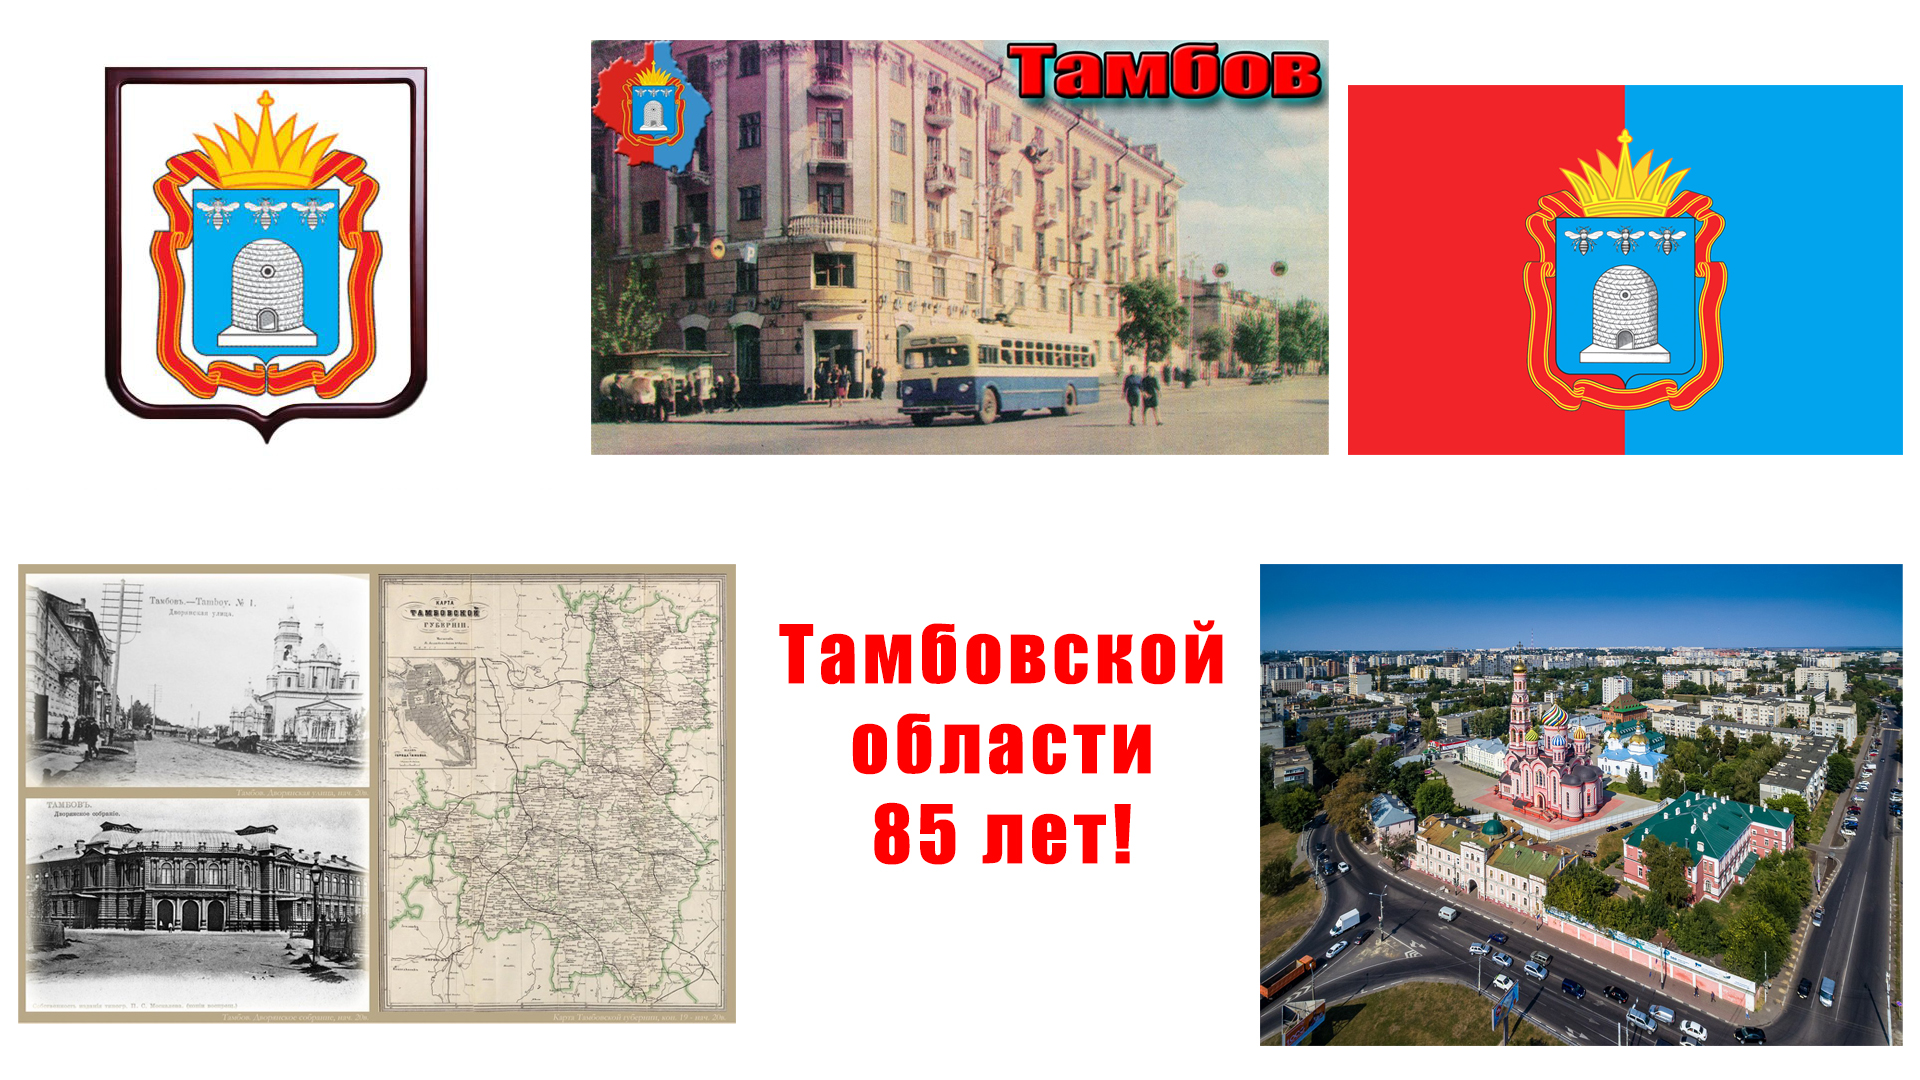 You are currently viewing Сегодня замечательный день — Тамбовская область отмечает день своего образования.